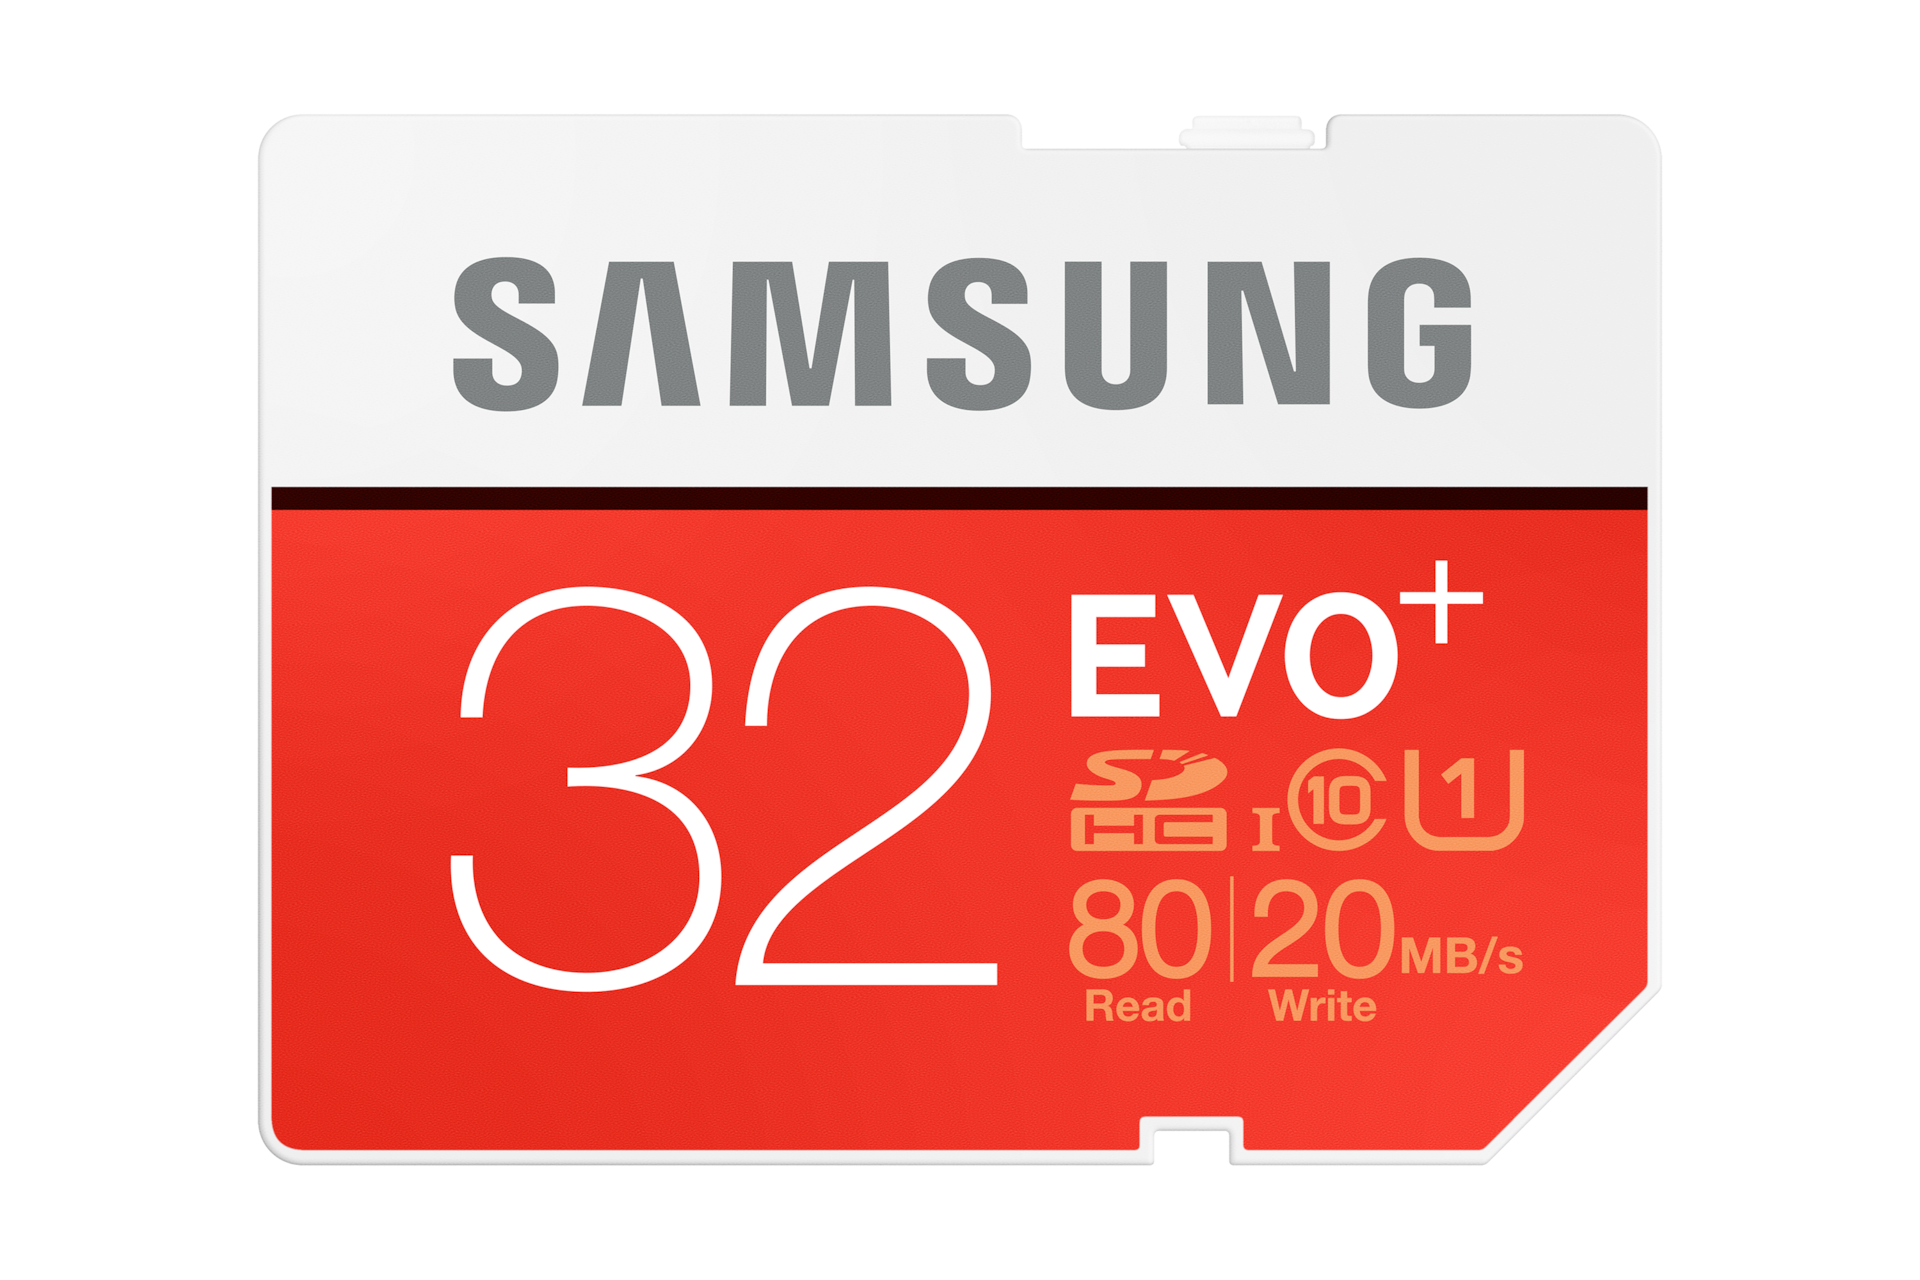 taxi discretie Aan het water Samsung 32 GB SD kaart SC32D| Samsung NL